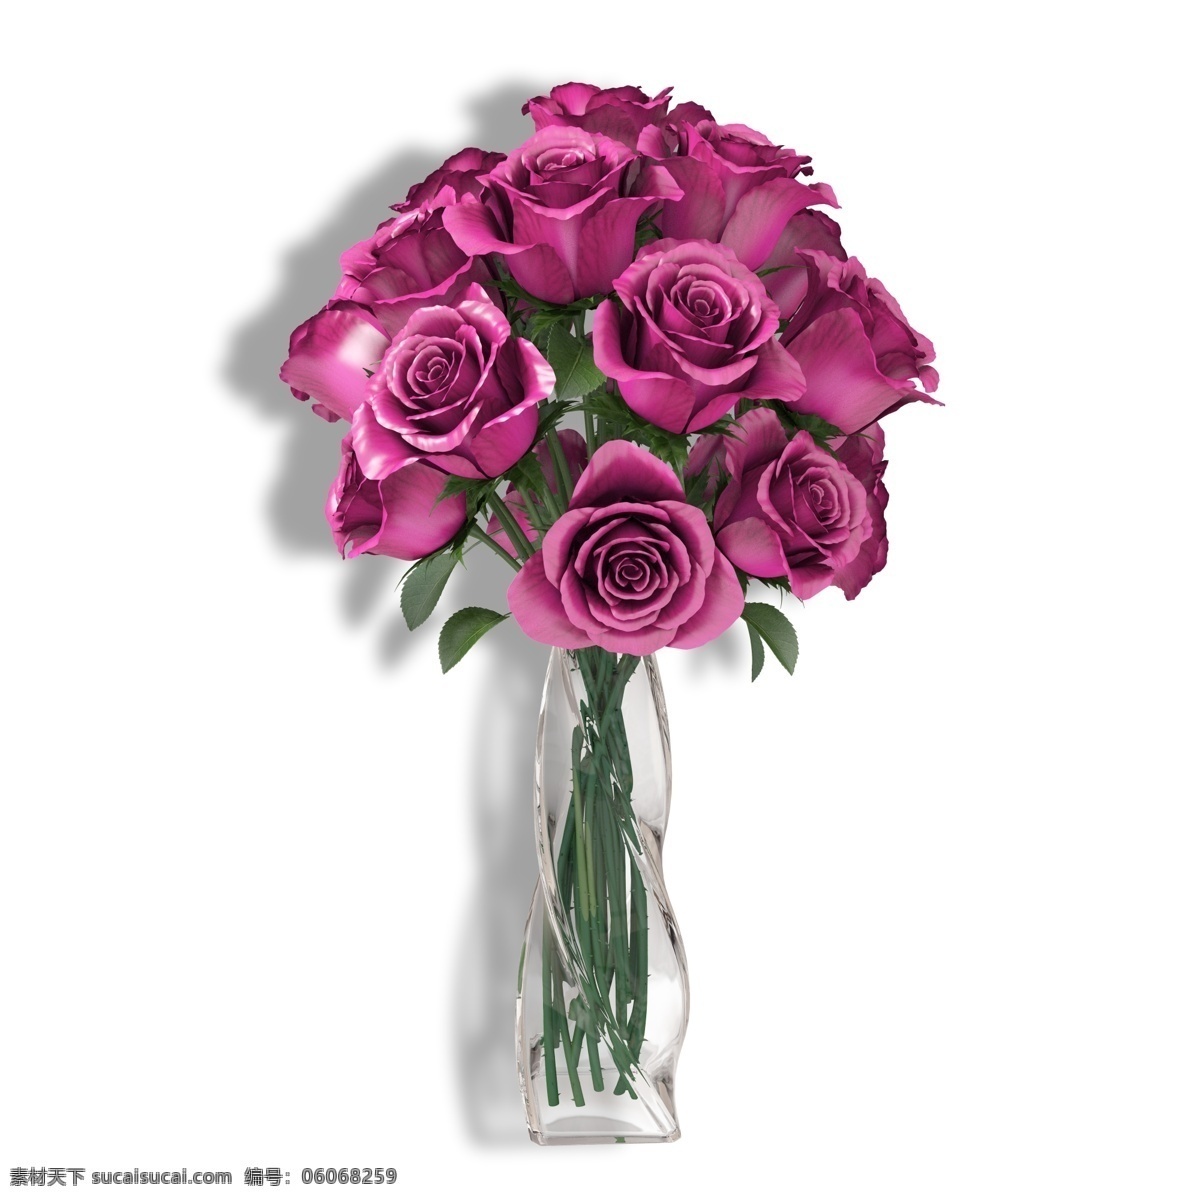 玻璃 花瓶 束 玫瑰 玻璃花瓶 玫瑰花 花儿 粉红玫瑰 一束玫瑰 绽放的玫瑰 情人节玫瑰 家居装饰花瓶